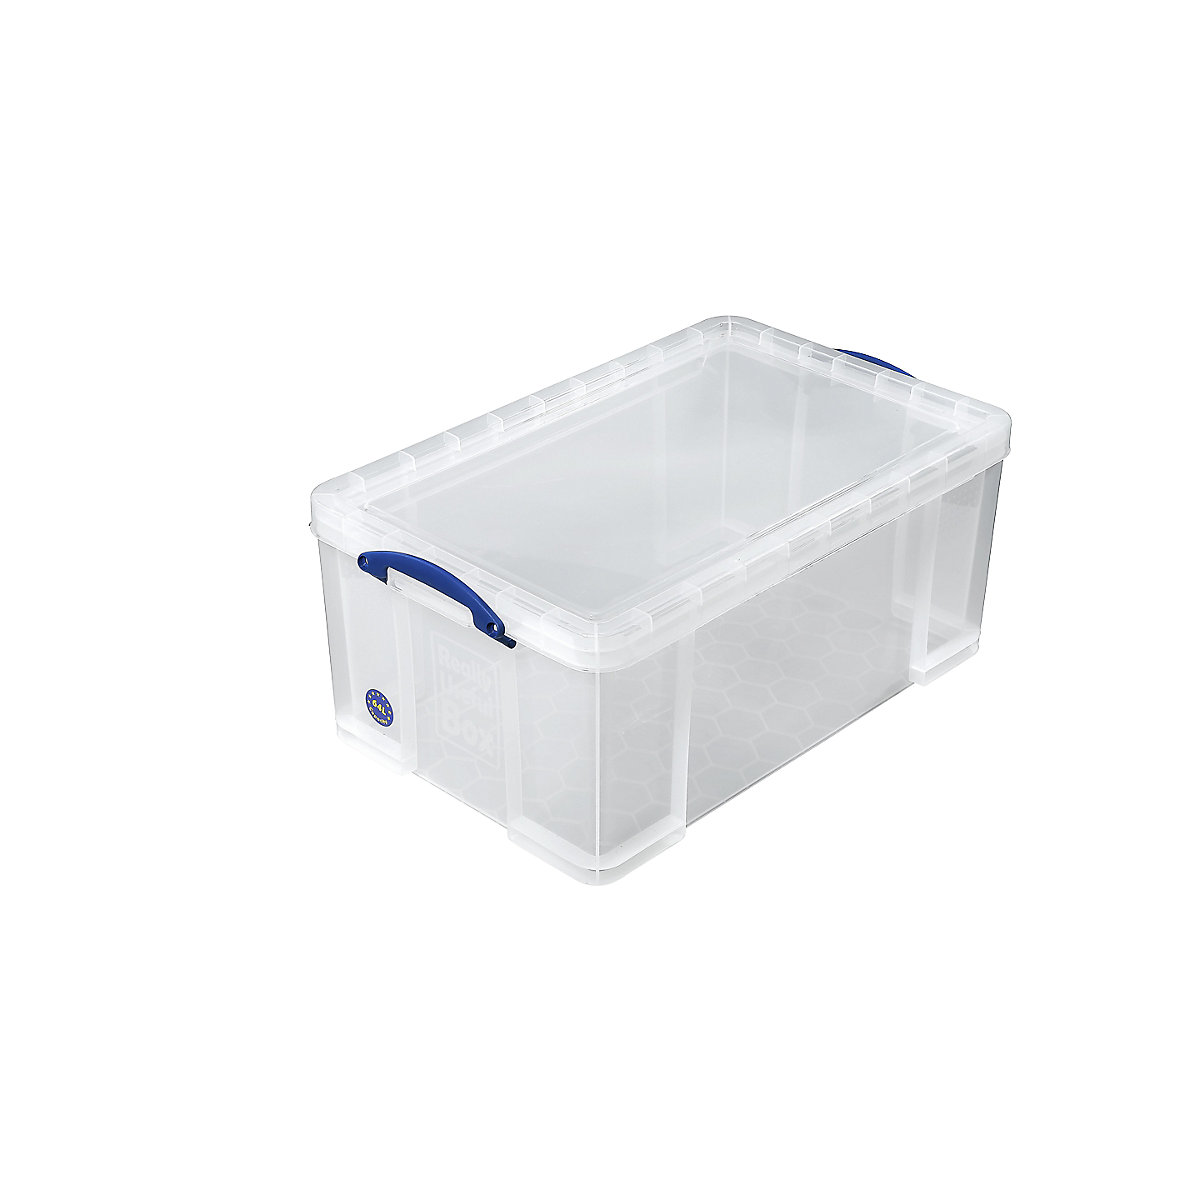 Stohovací box REALLY USEFUL, s víkem, objem 64 l, d x š x v 710 x 440 x 310 mm-6